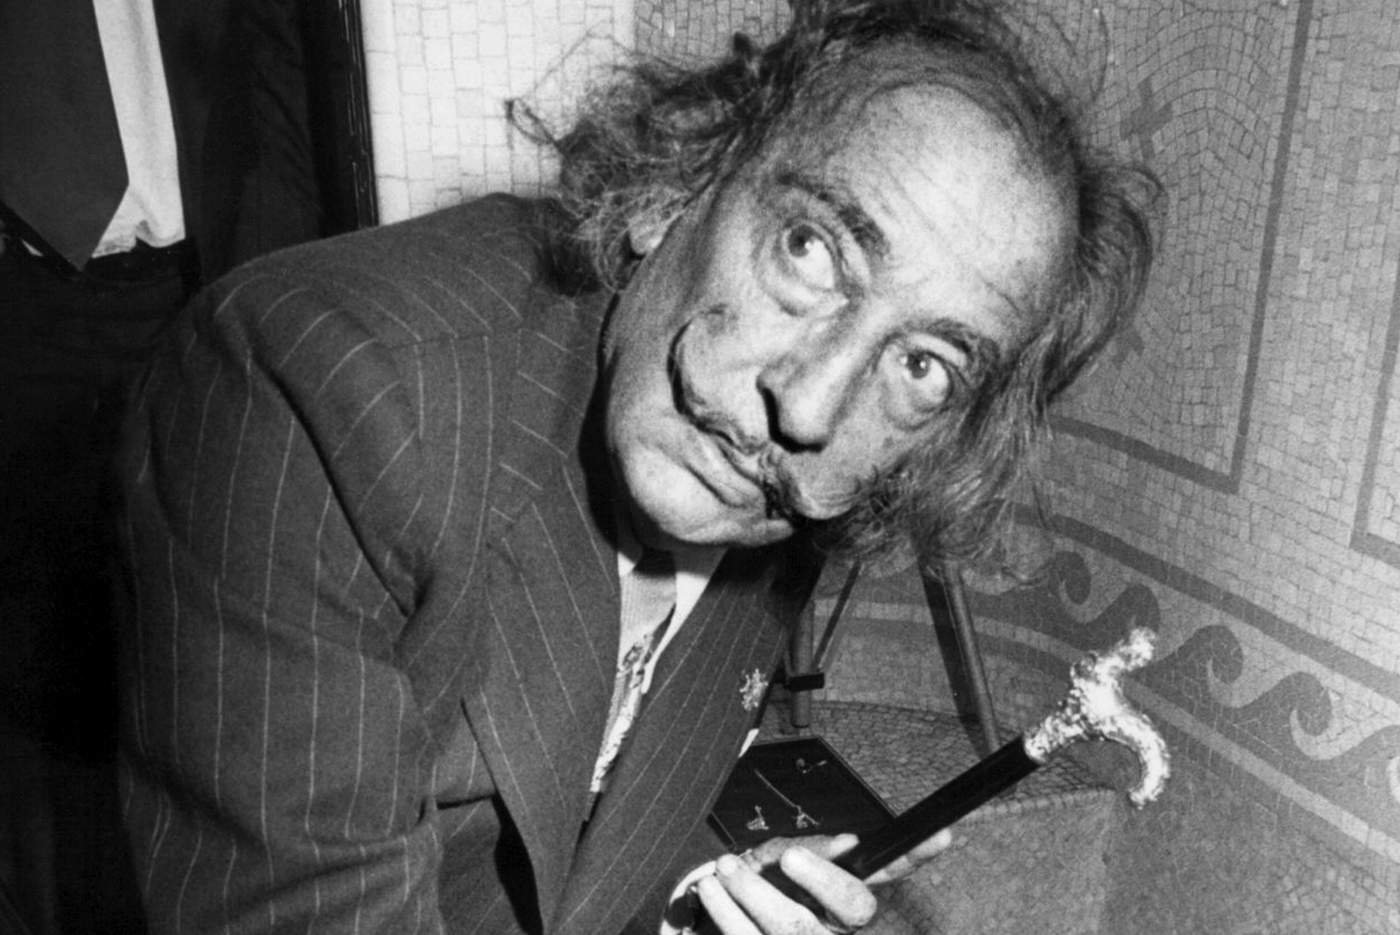 1989: Fallece Salvador Dalí, uno de los máximos representantes del surrealismo